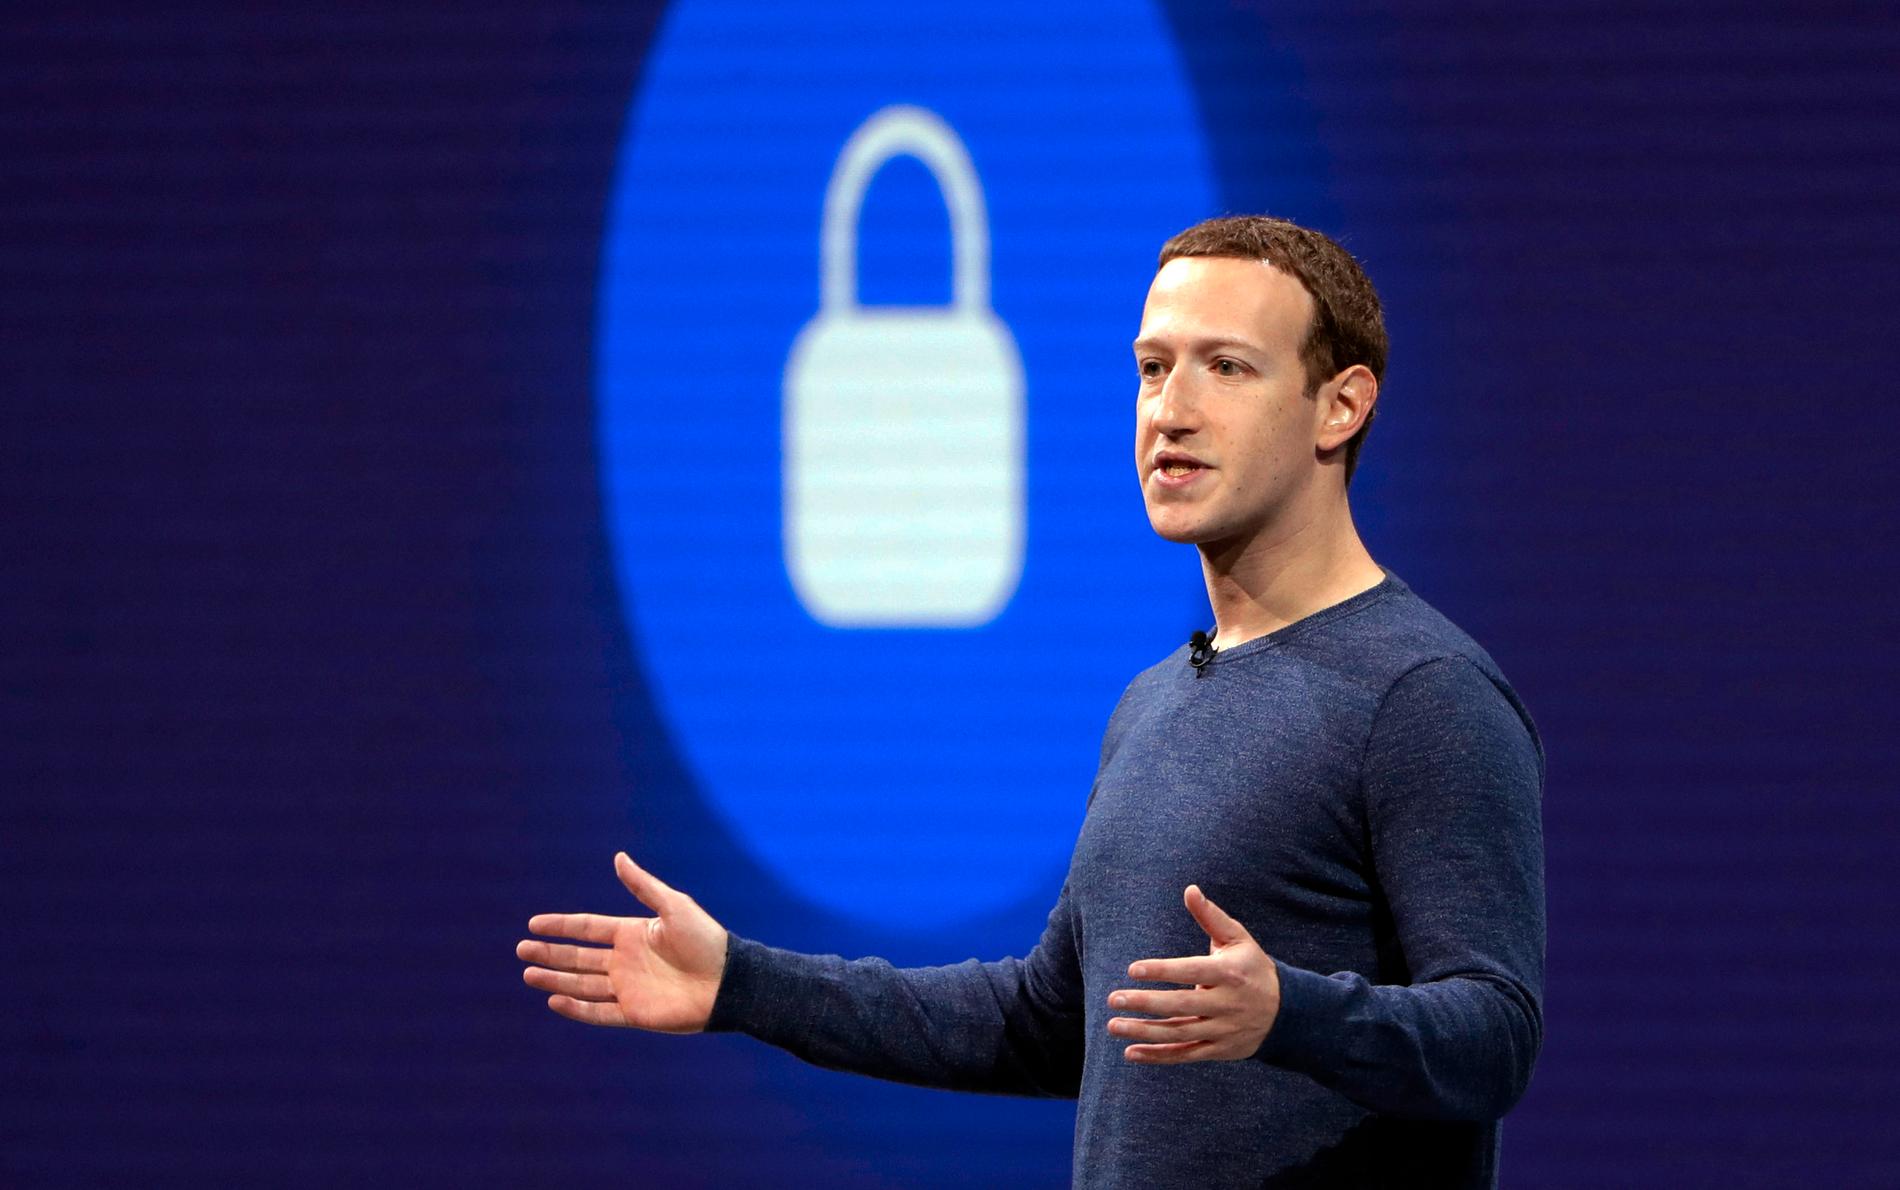 "Människor vill att vi anstränger oss för att skydda deras data", skrev Facebooks grundare Mark Zuckerberg i samband med att han berättade om den kommande krypteringen. Arkivbild.